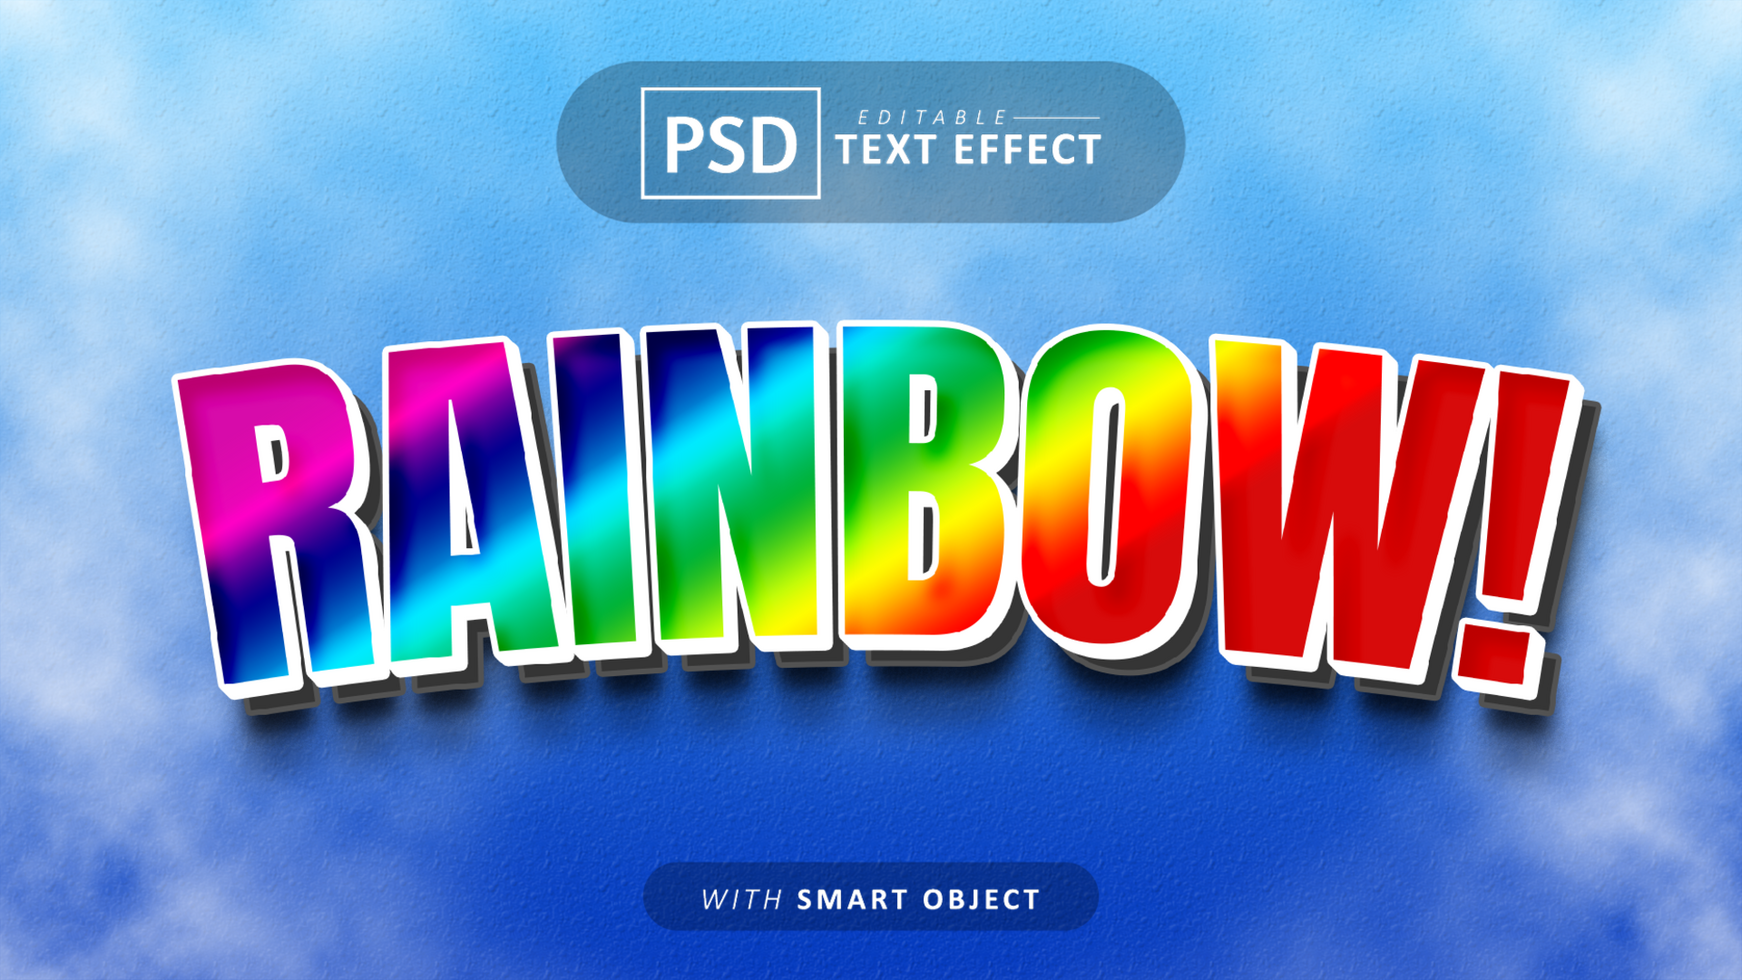 Rainbow cartoon text effect editable psd